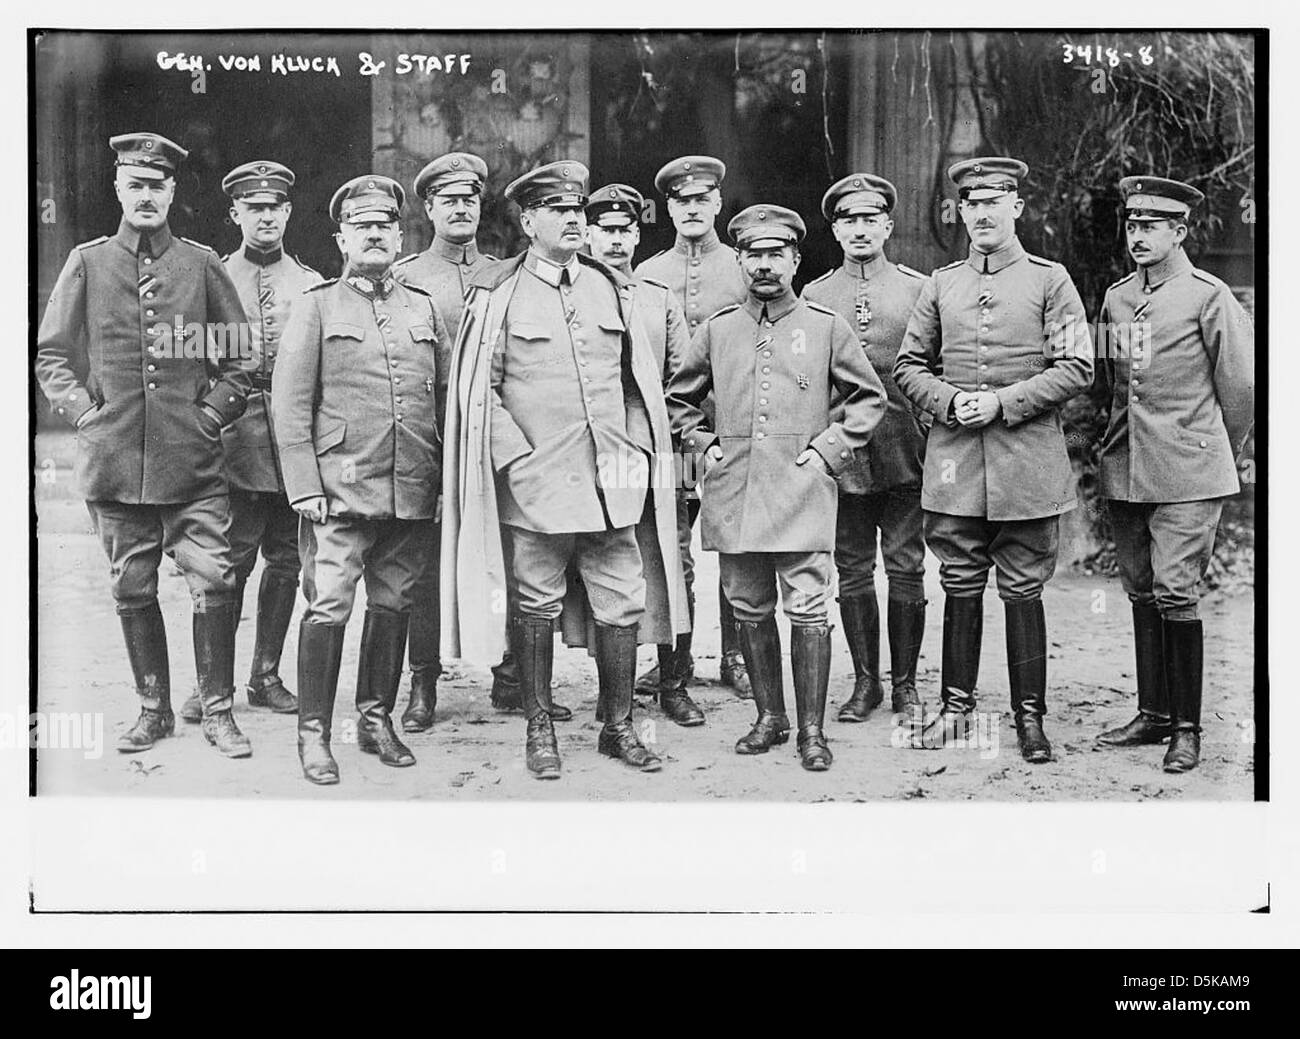 Gen. von Kluck and staff (LOC Stock Photo - Alamy